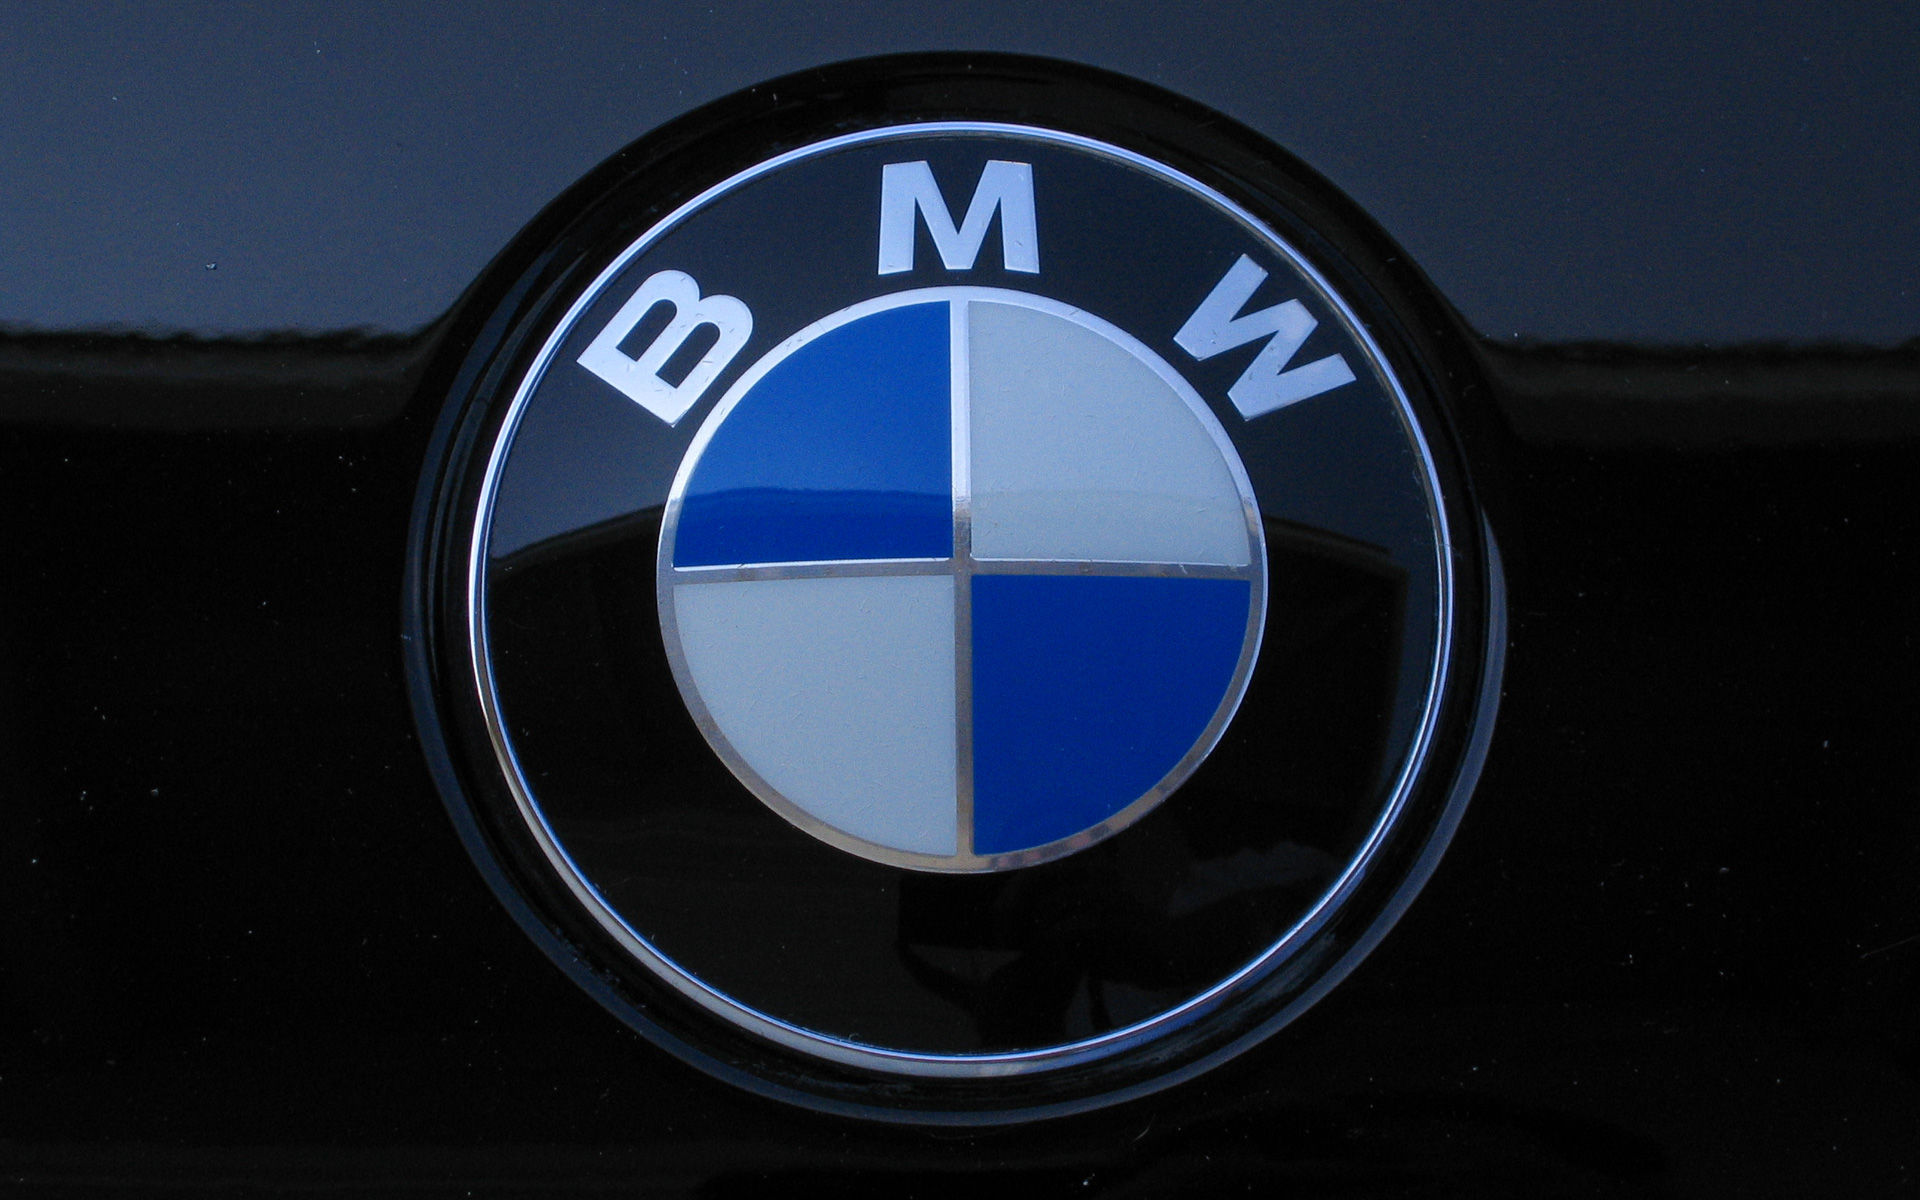 BMW Harus Menanggung Denda USD 40 Juta (Rp 546,6 Milyar) Terkait Masalah Aspek Keselamatan Mini Cooper